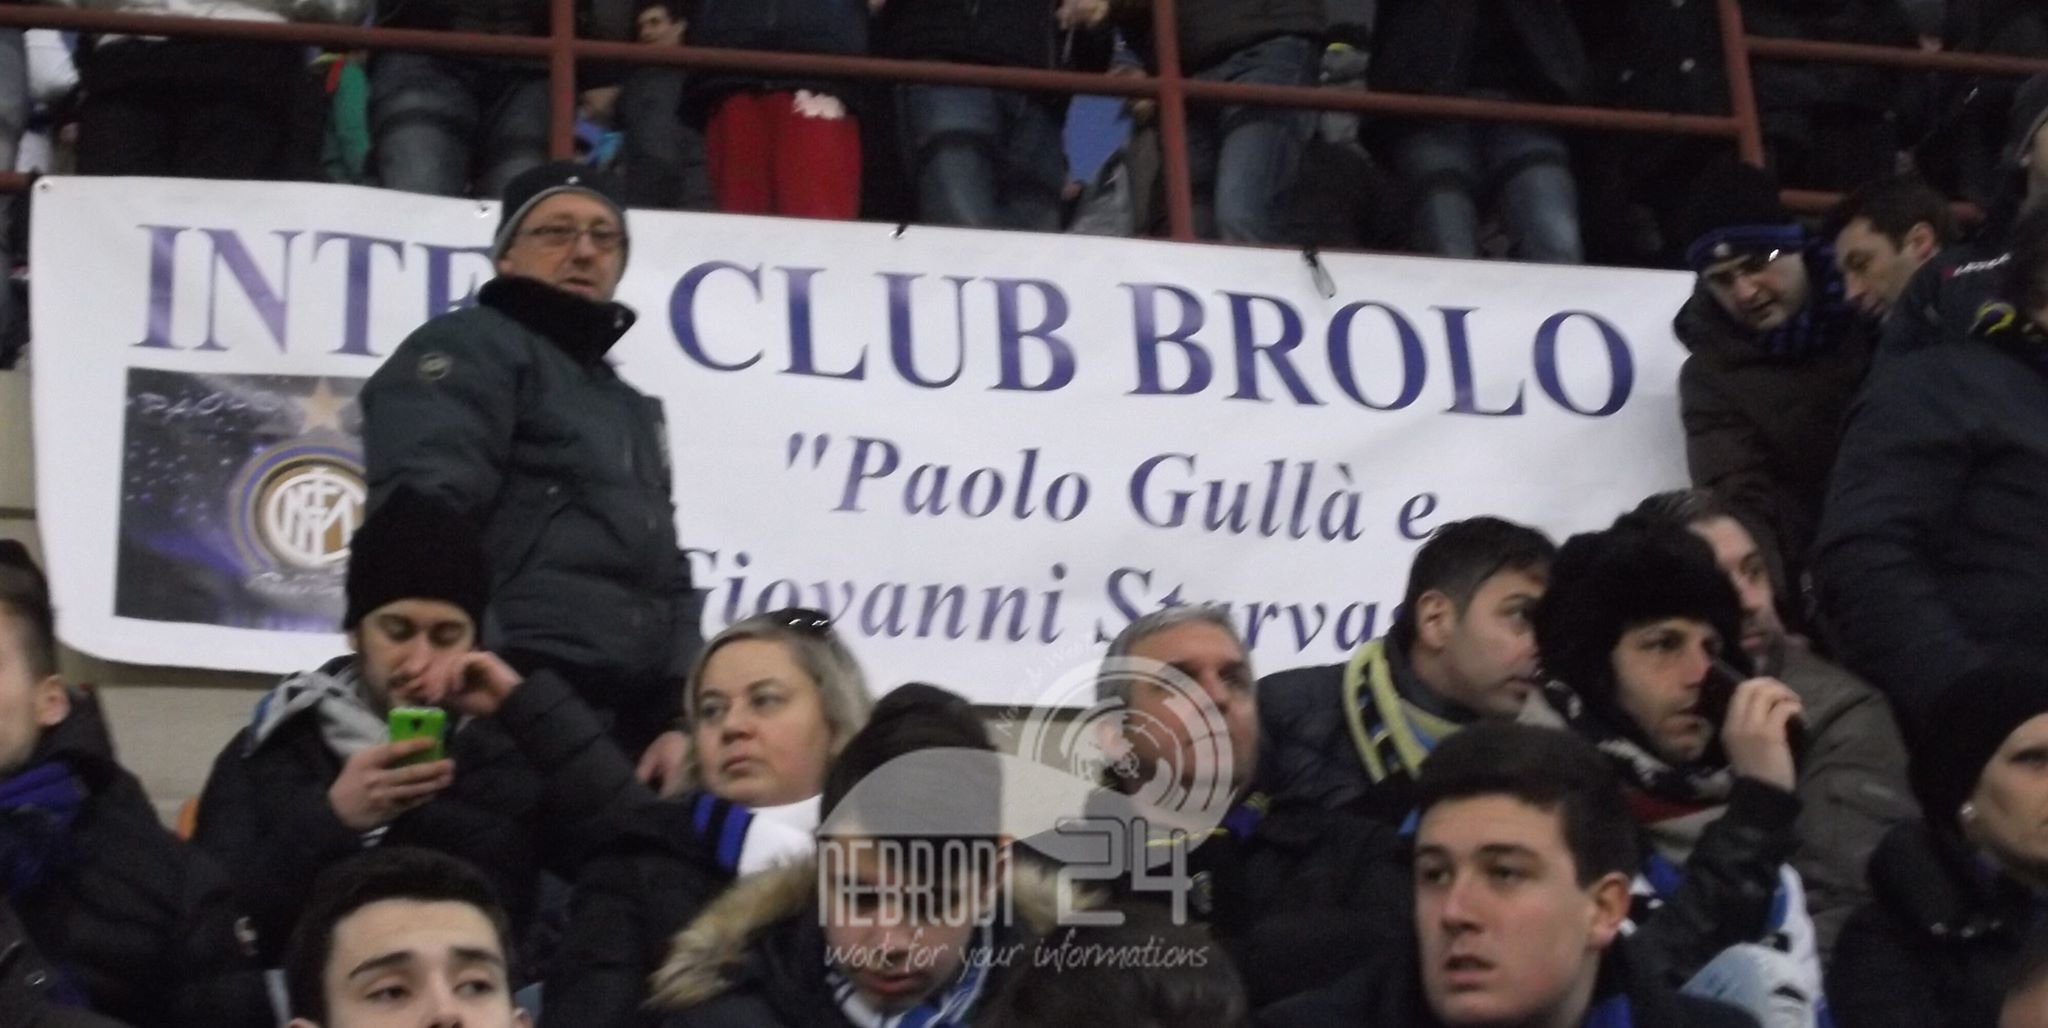 Brolo – L’Inter Club Brolo di “Paolo e Giovanni” raccoglie fondi per chi ha bisogno